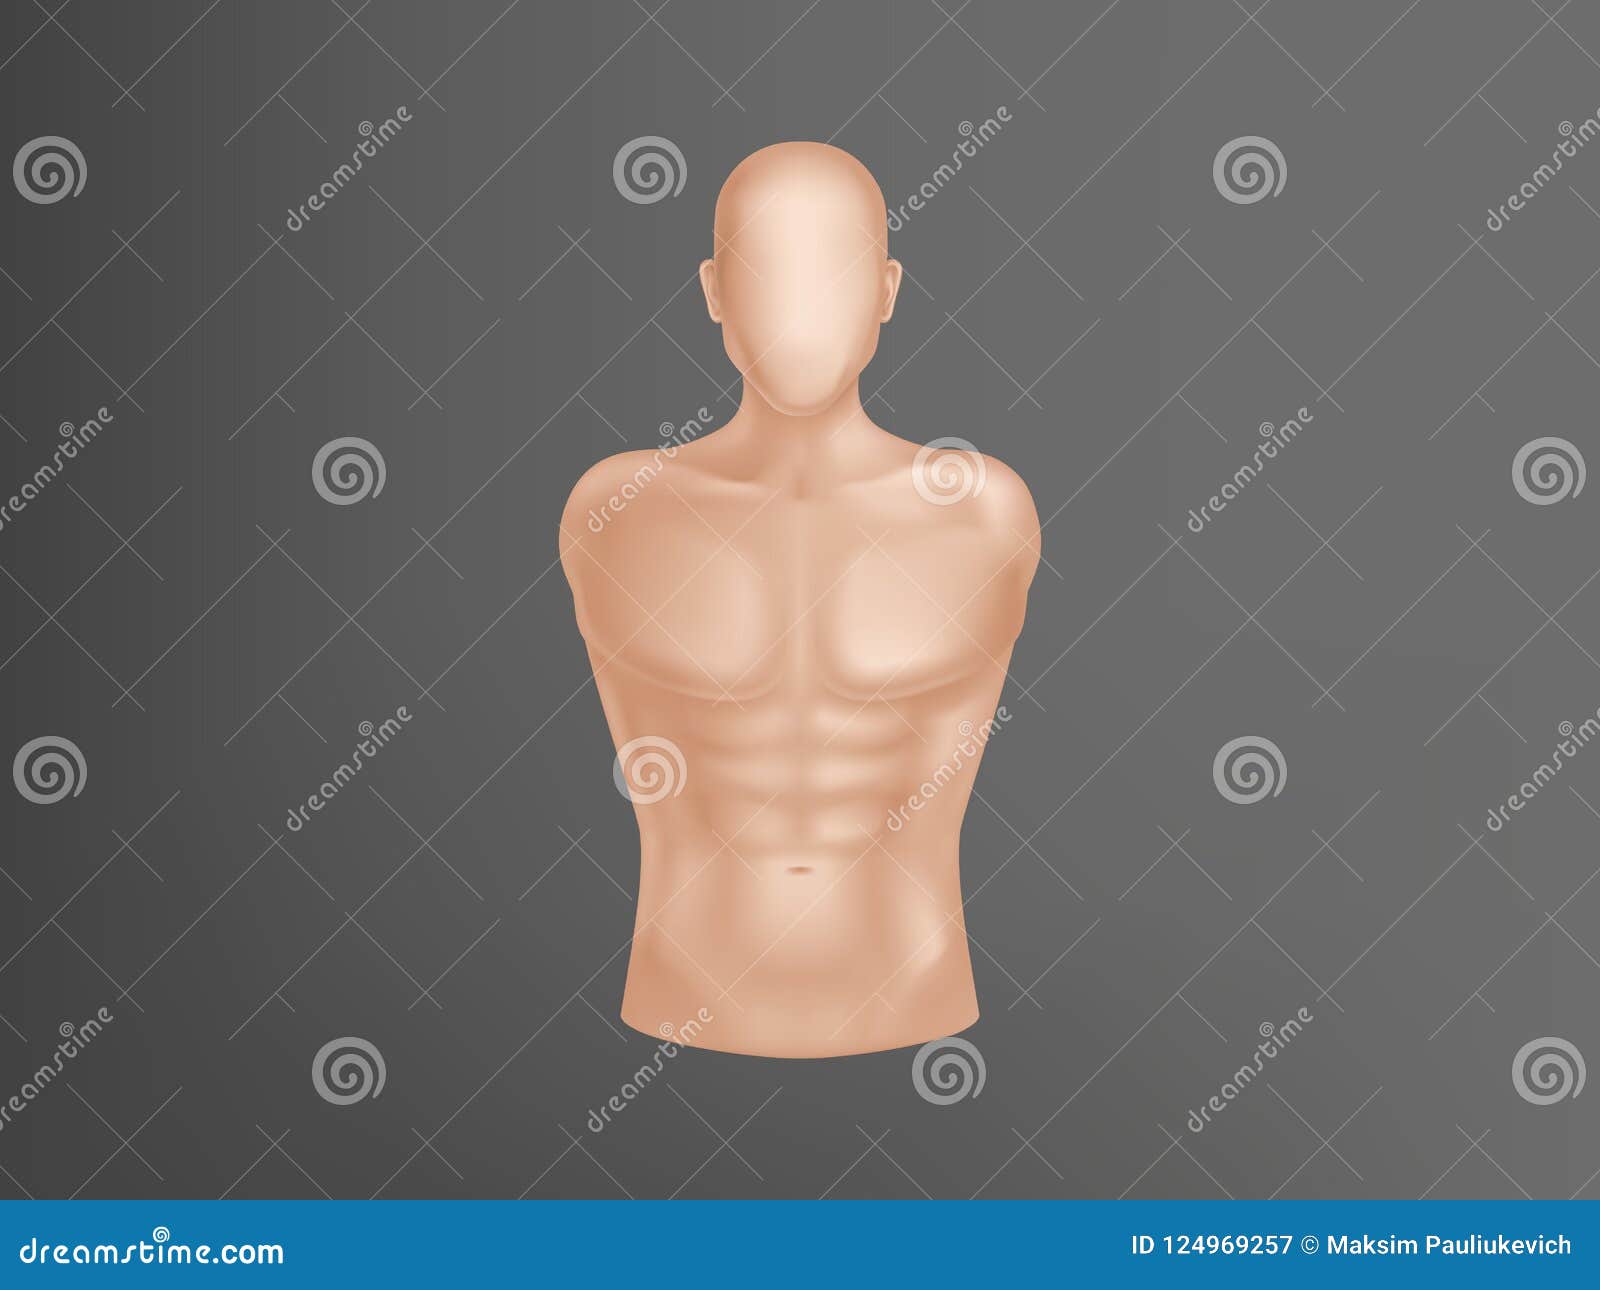  3d realistic human body, man torso